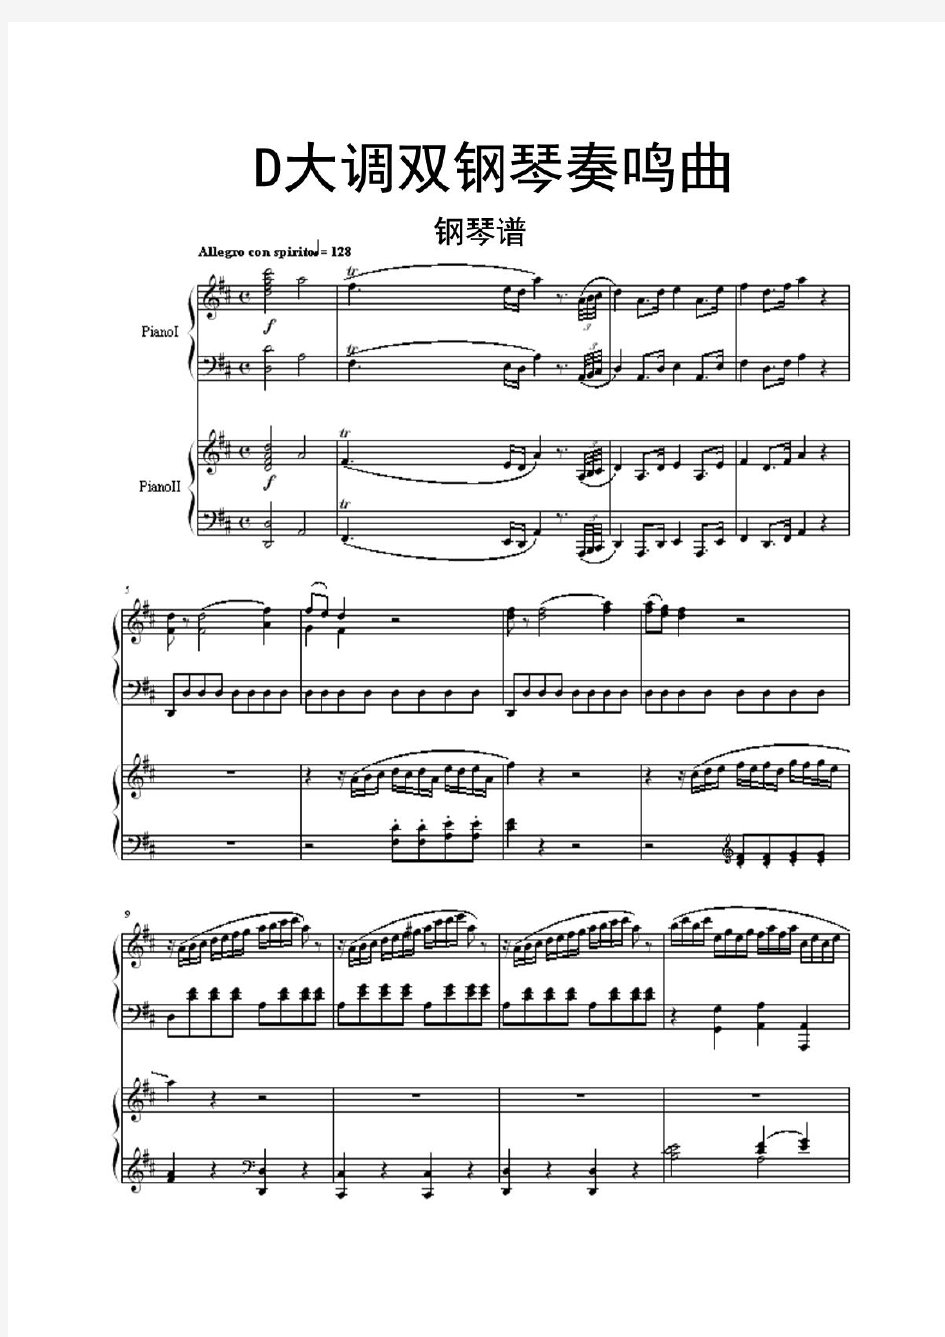 莫扎特D大调双钢琴奏鸣曲K448钢琴谱乐谱